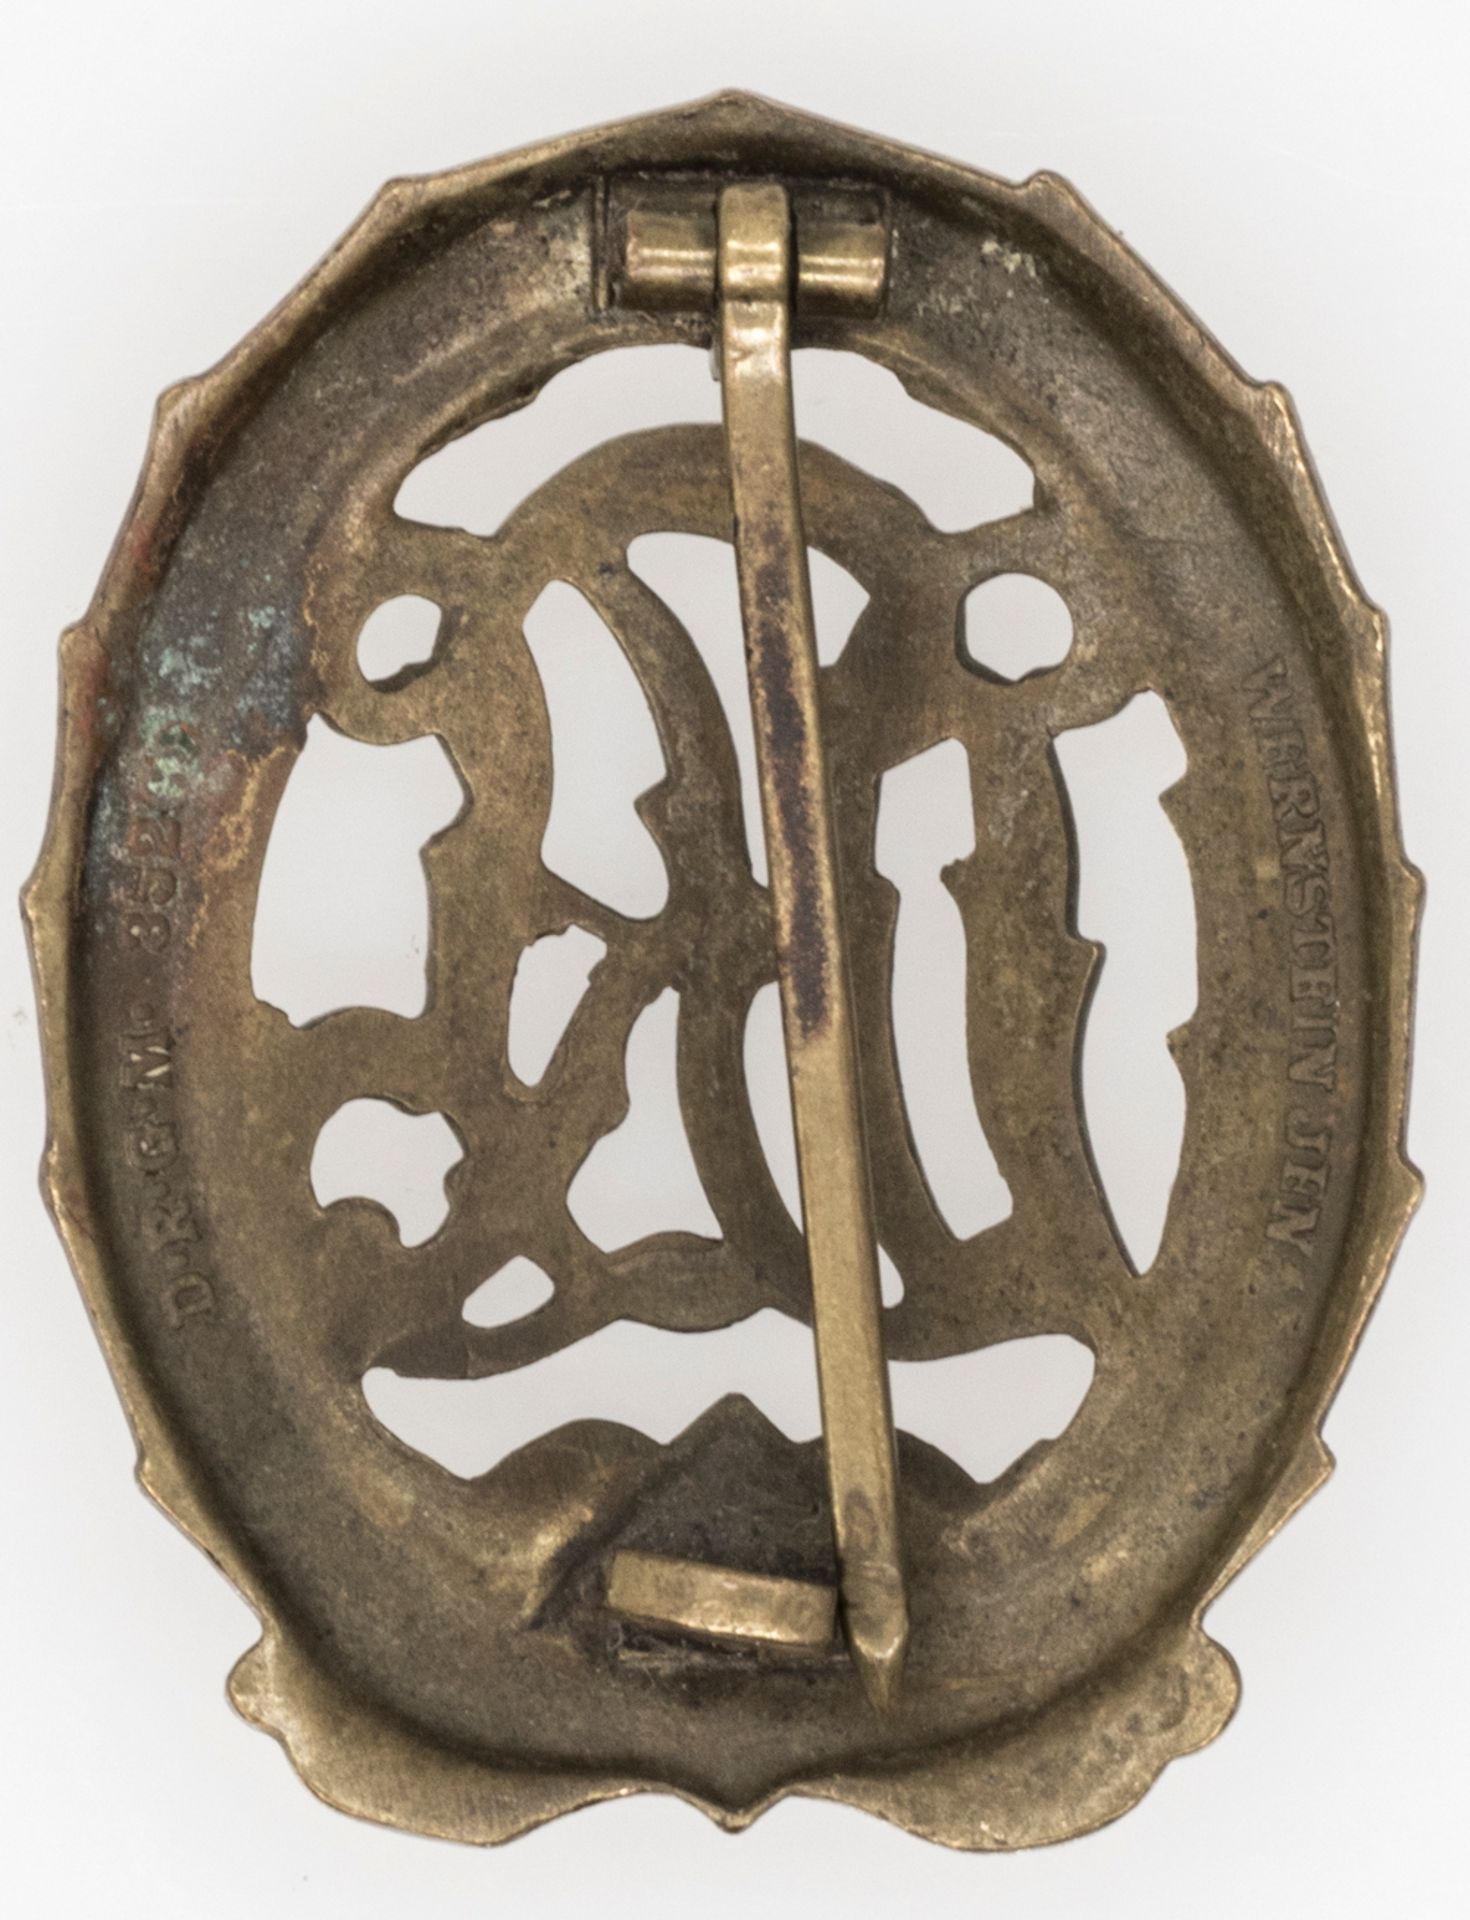 Drittes Reich Deutsches Sportabzeichen DRL in Bronze. Hersteller Wernstein Jena, D.R.G.M. - Image 2 of 2